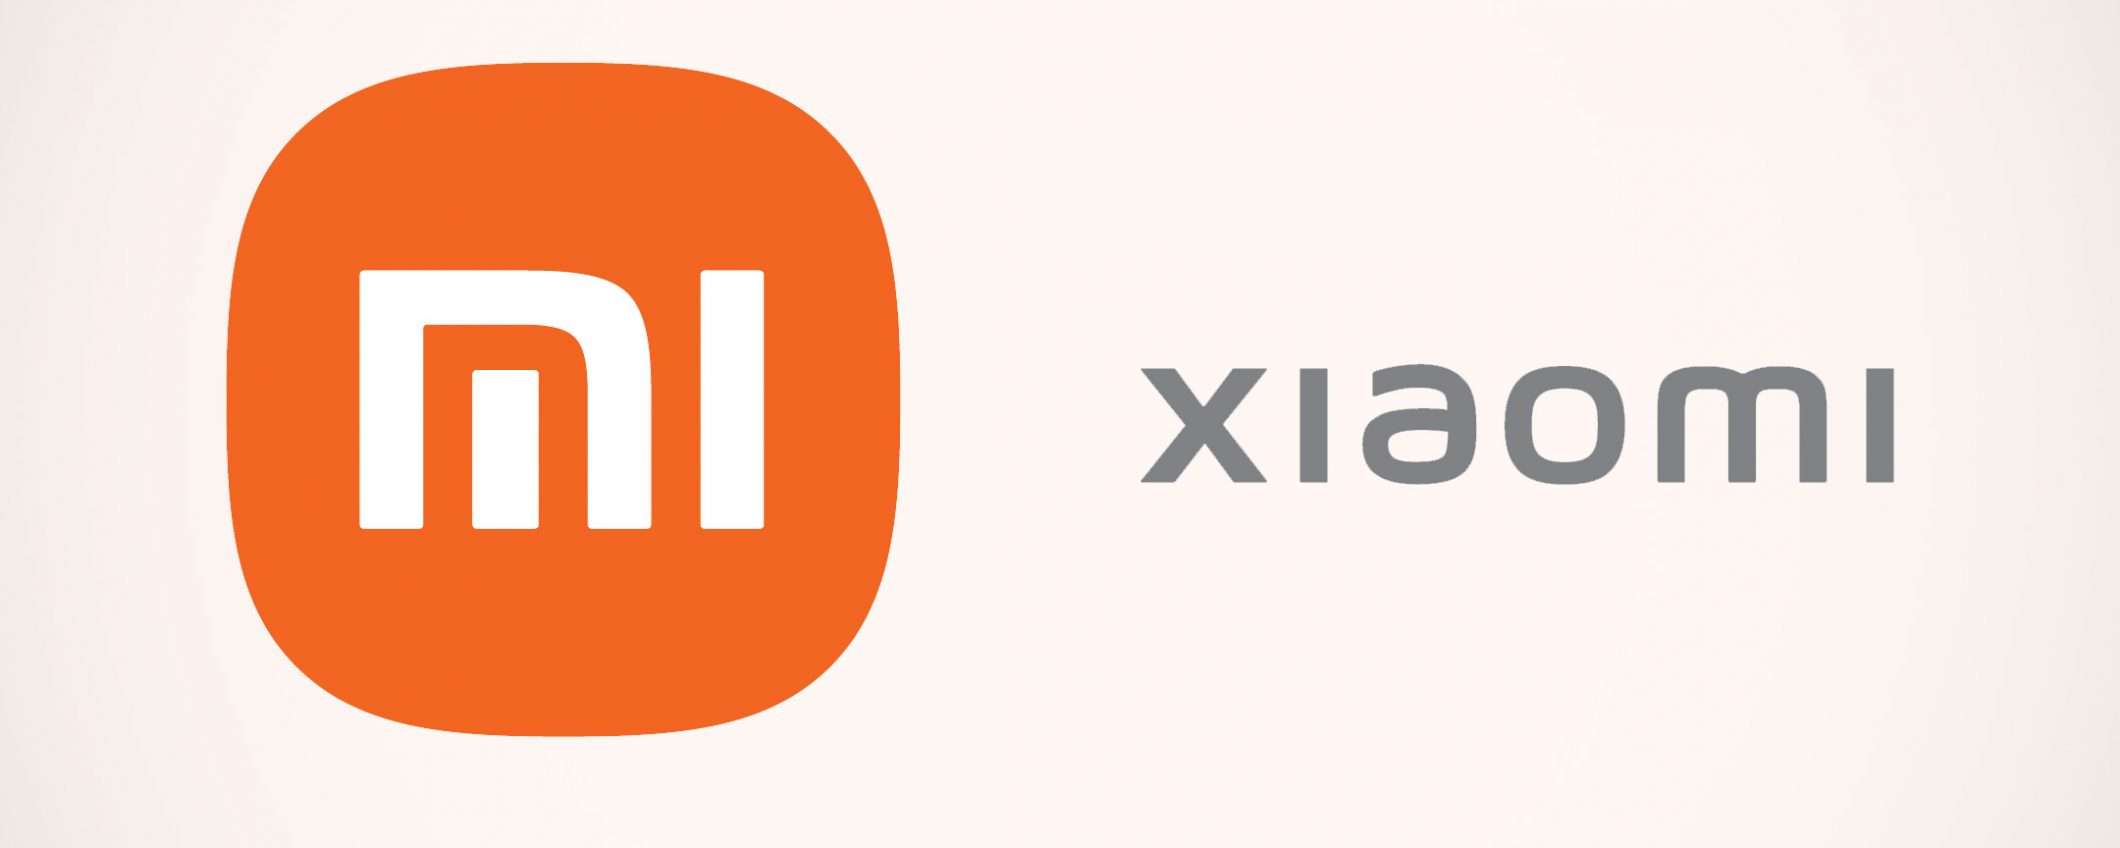 Auto elettriche per Xiaomi: ora è ufficiale